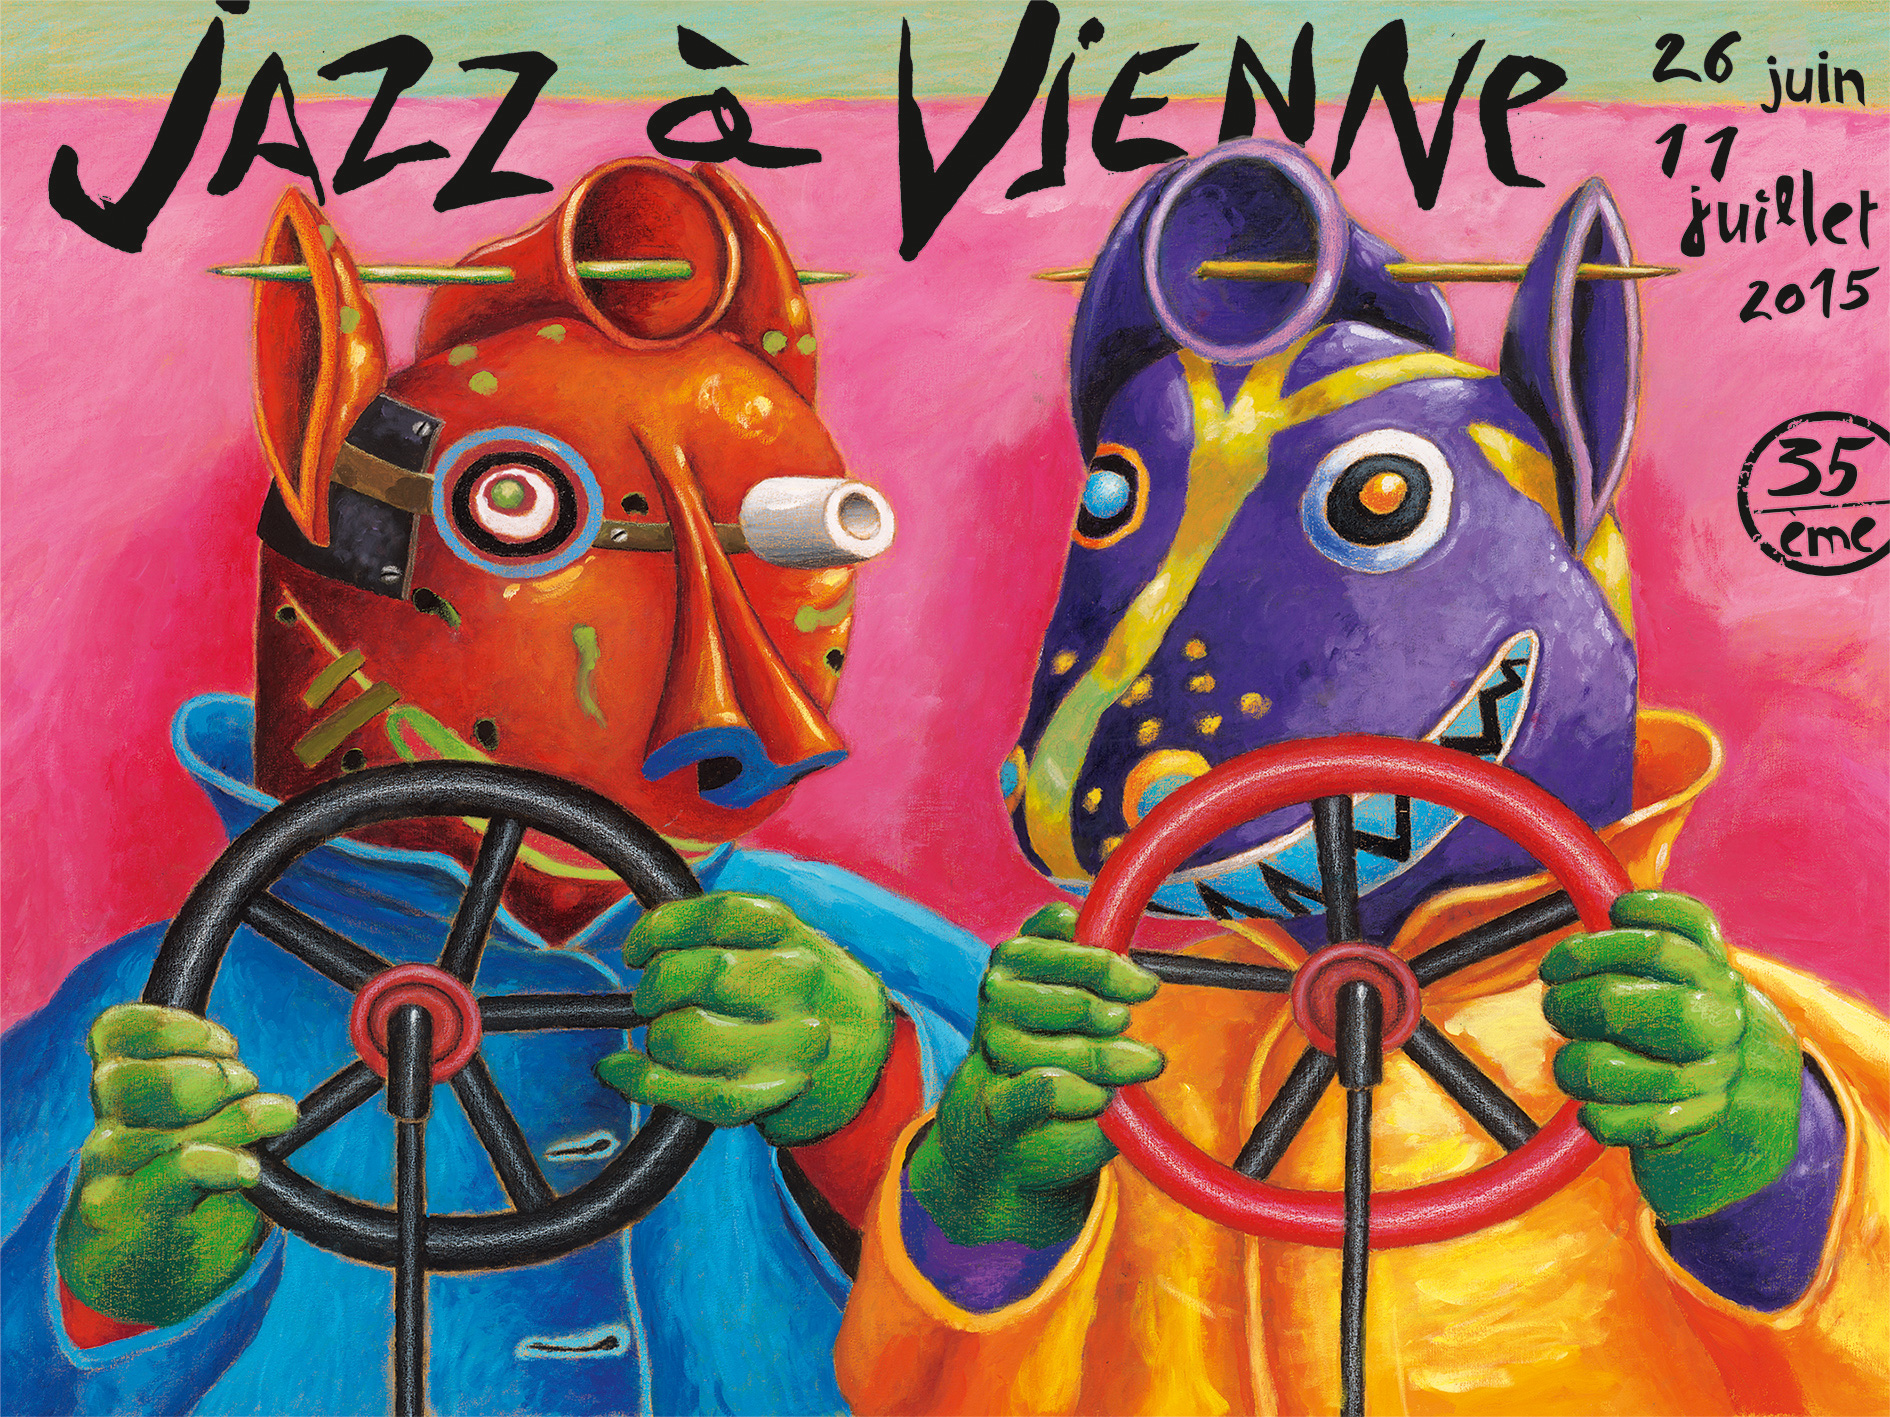 Jazzavienne 2015 affiche xl 1